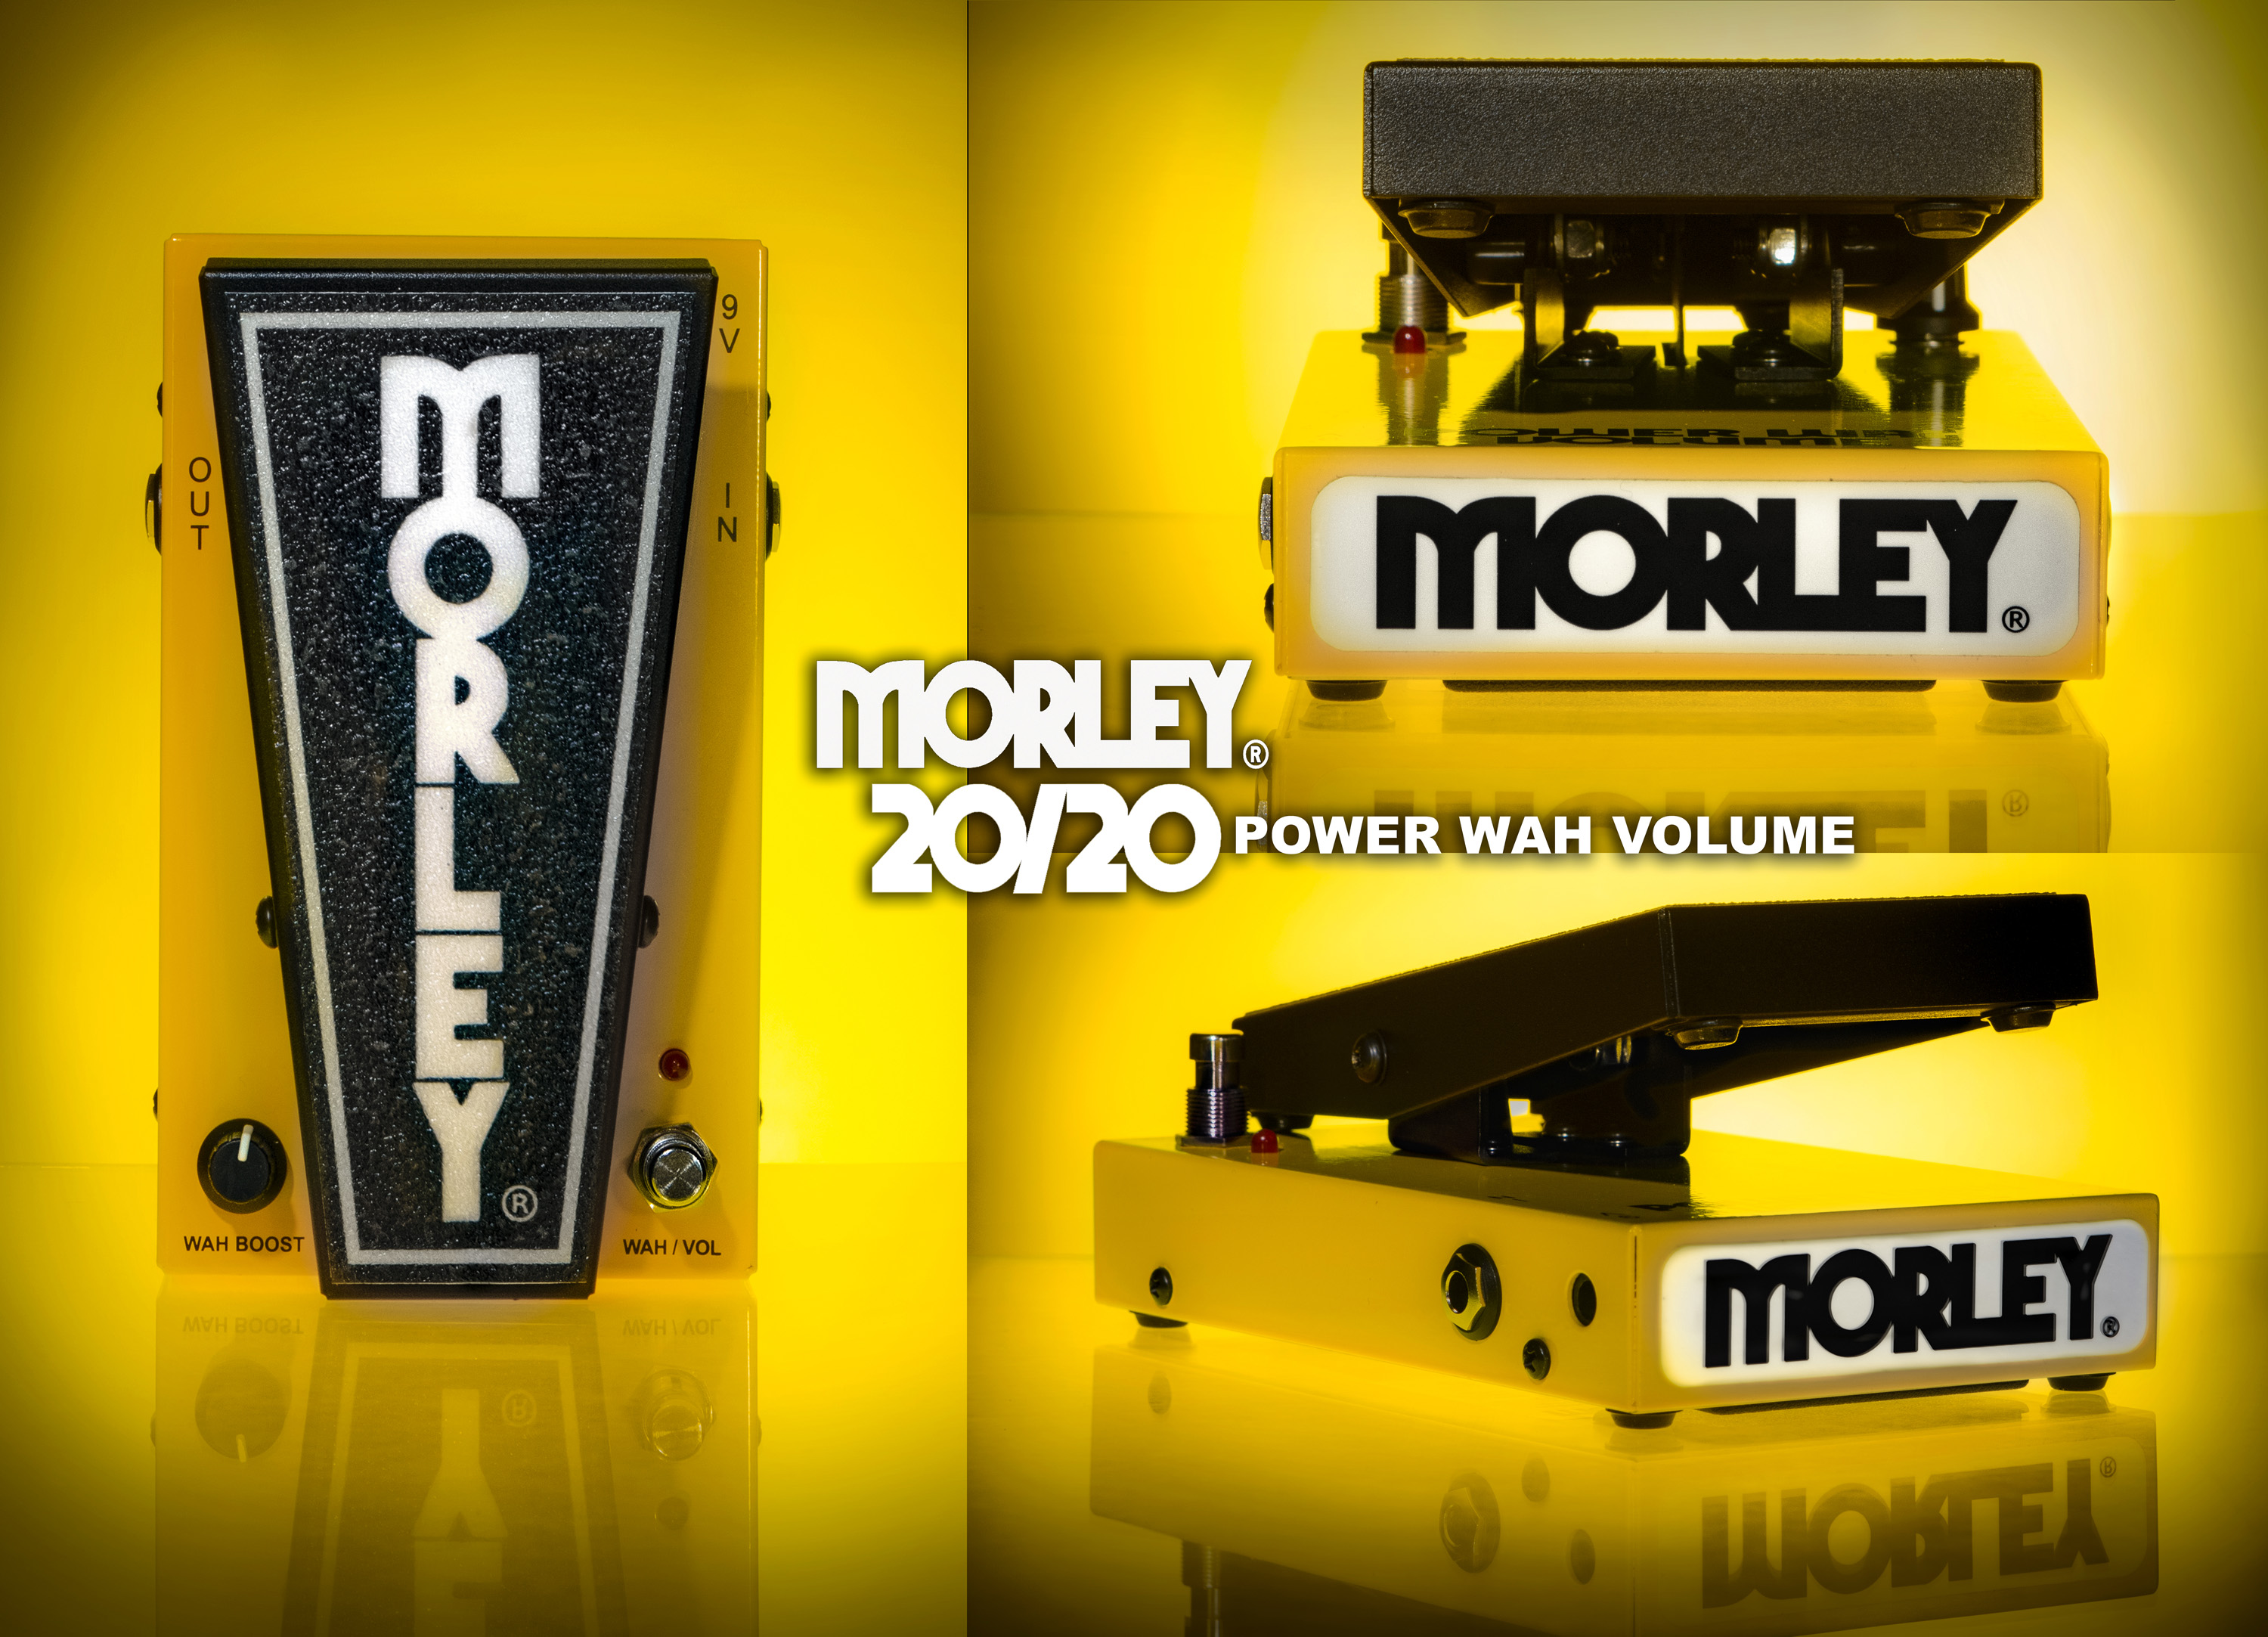 20/20 Power Wah Volume – Morley